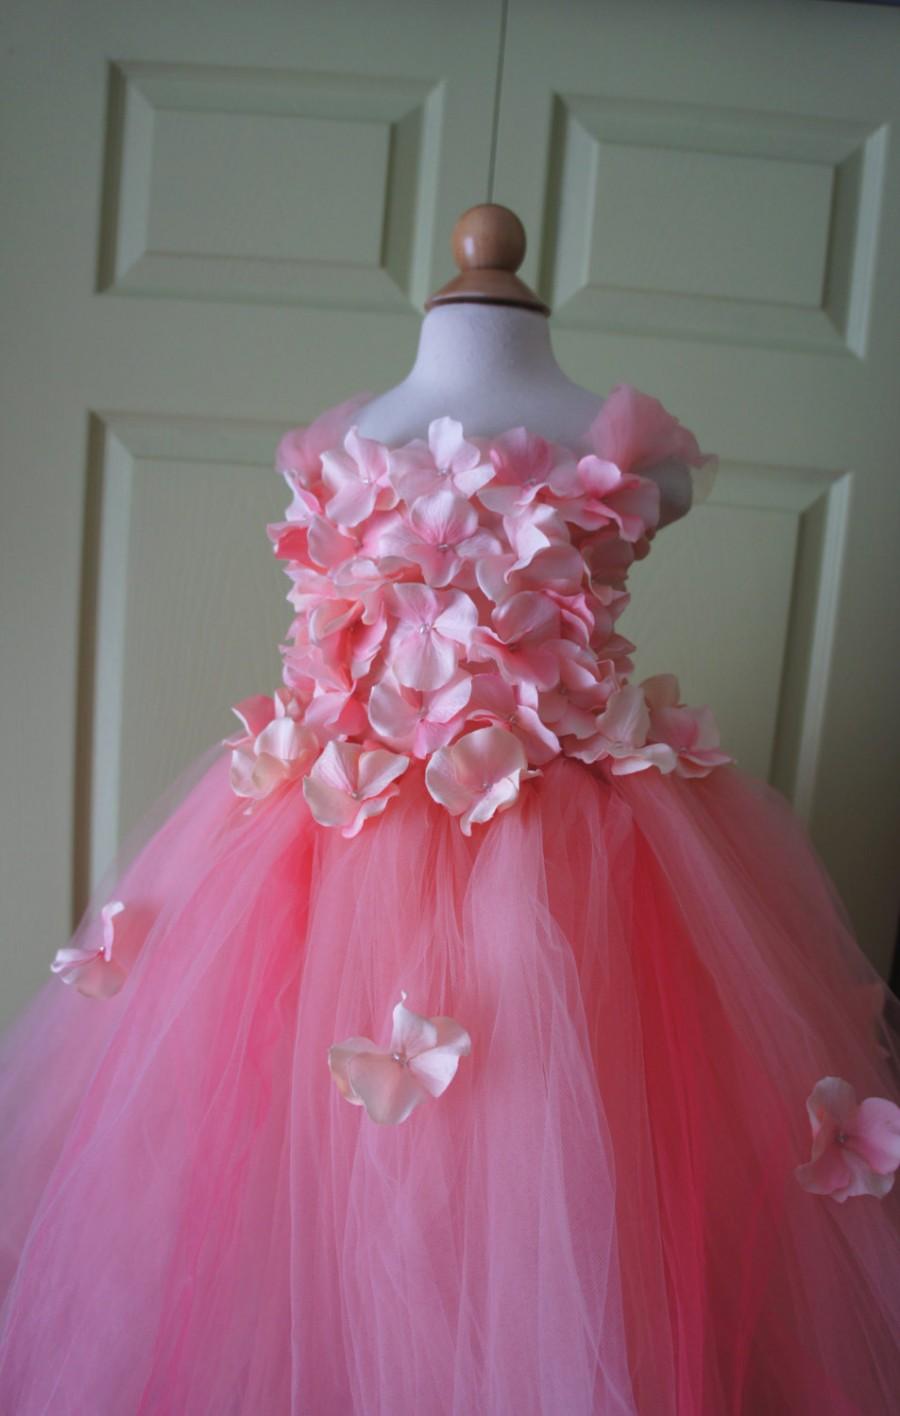 زفاف - Flower Girl Dress, Tutu Dress, Photo Prop, Pink Dress, Flower Top, Tutu Dress